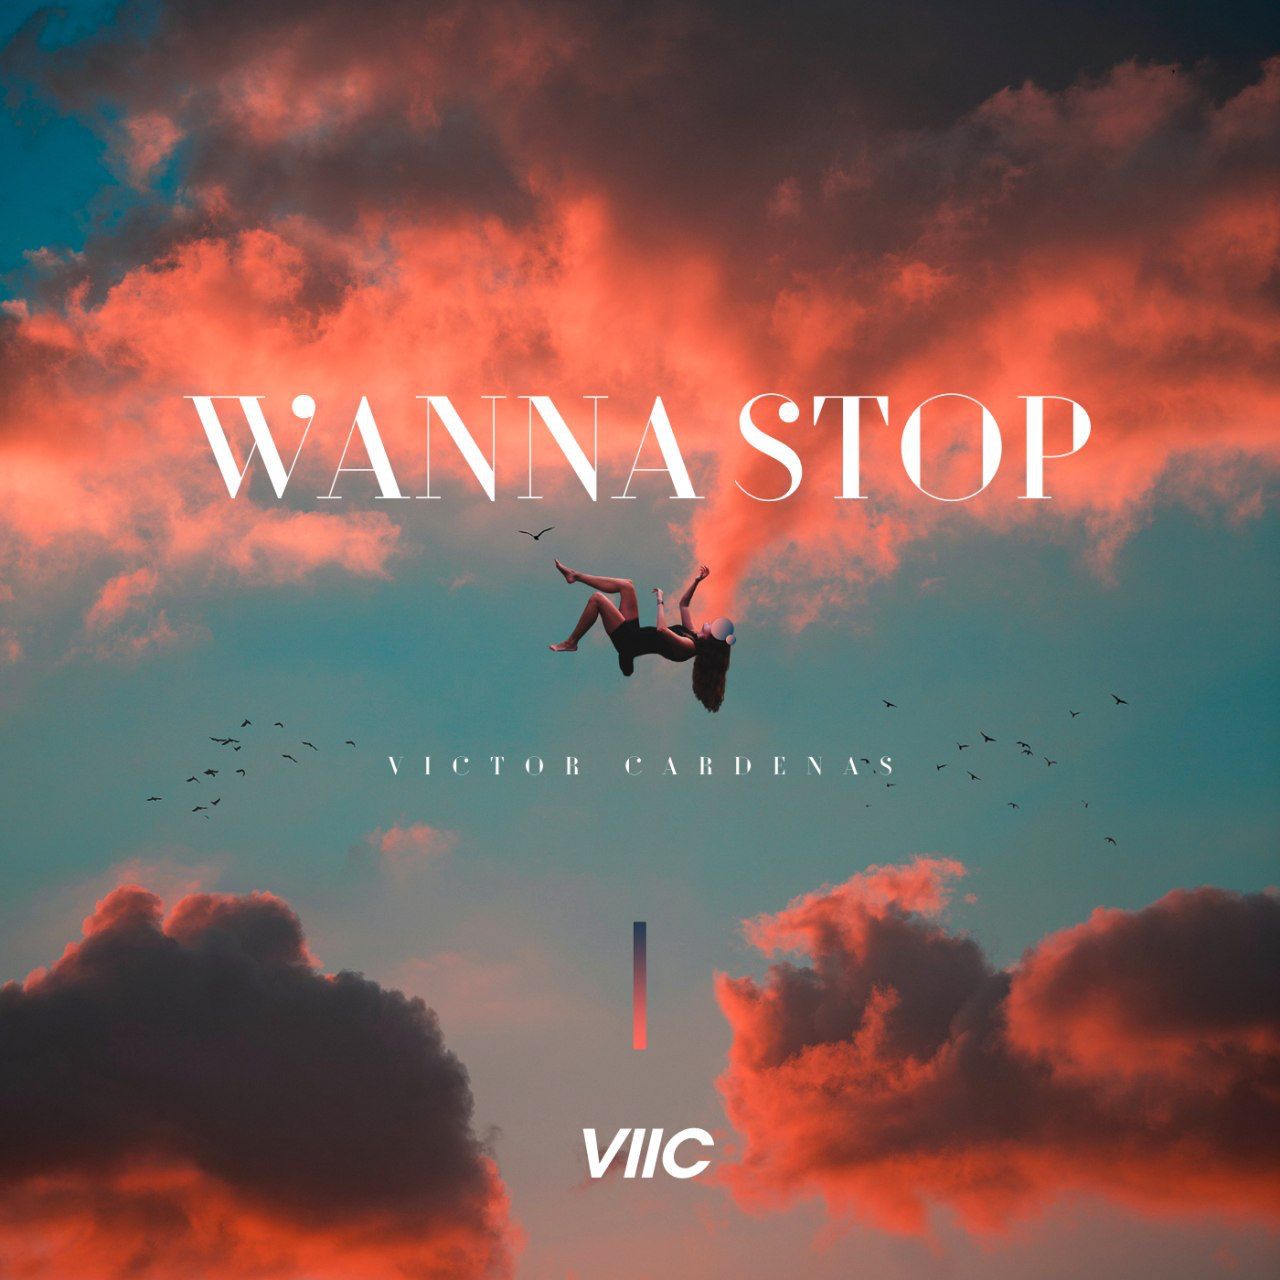 La fiesta no para con Víctor Cárdenas (viic) en su tema «Wanna Stop»